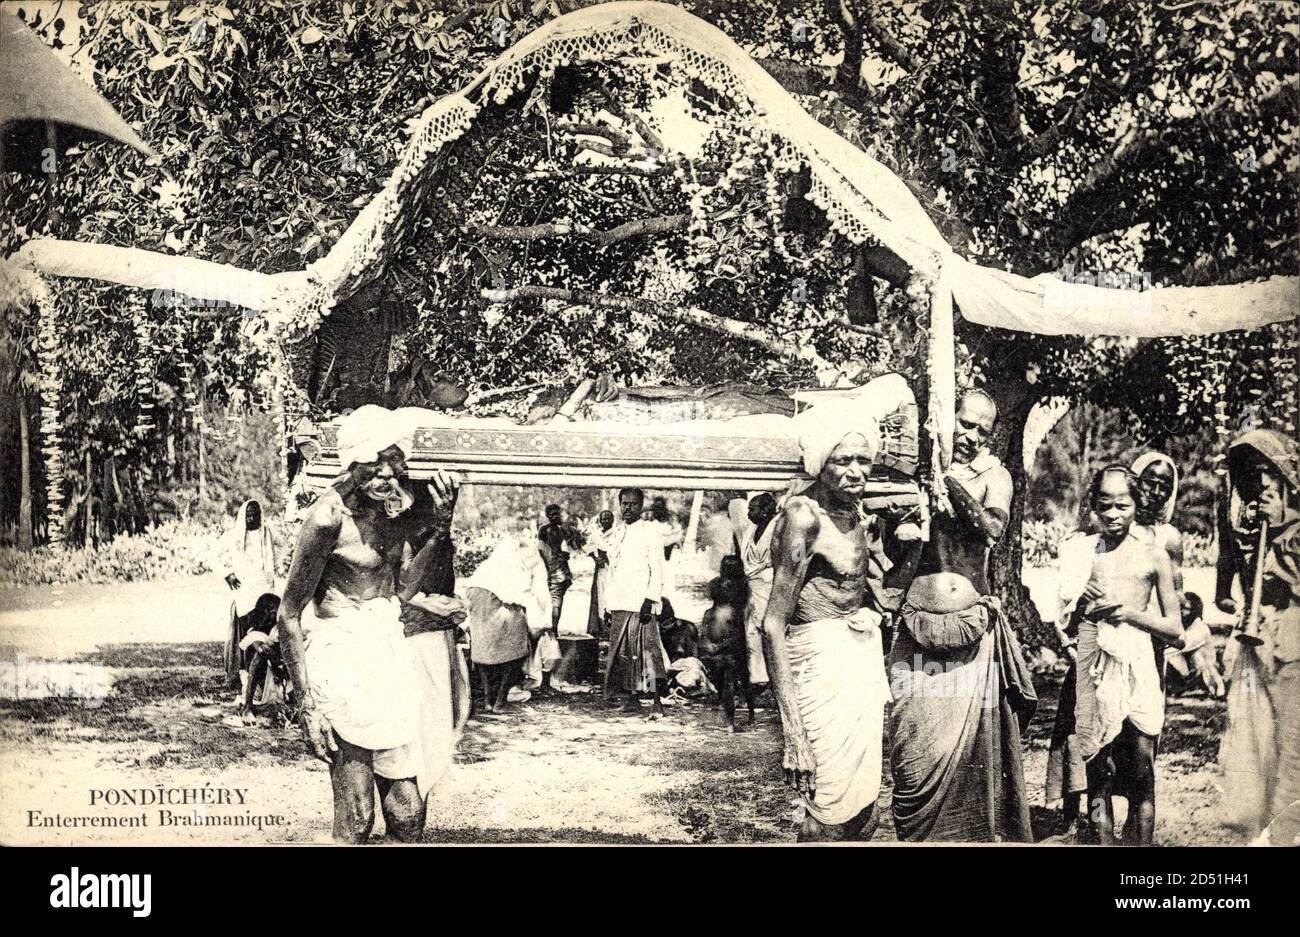 Pondichéry Indien, Entertrement brahamique, Einheimische, Begräbnis | utilizzo in tutto il mondo Foto Stock